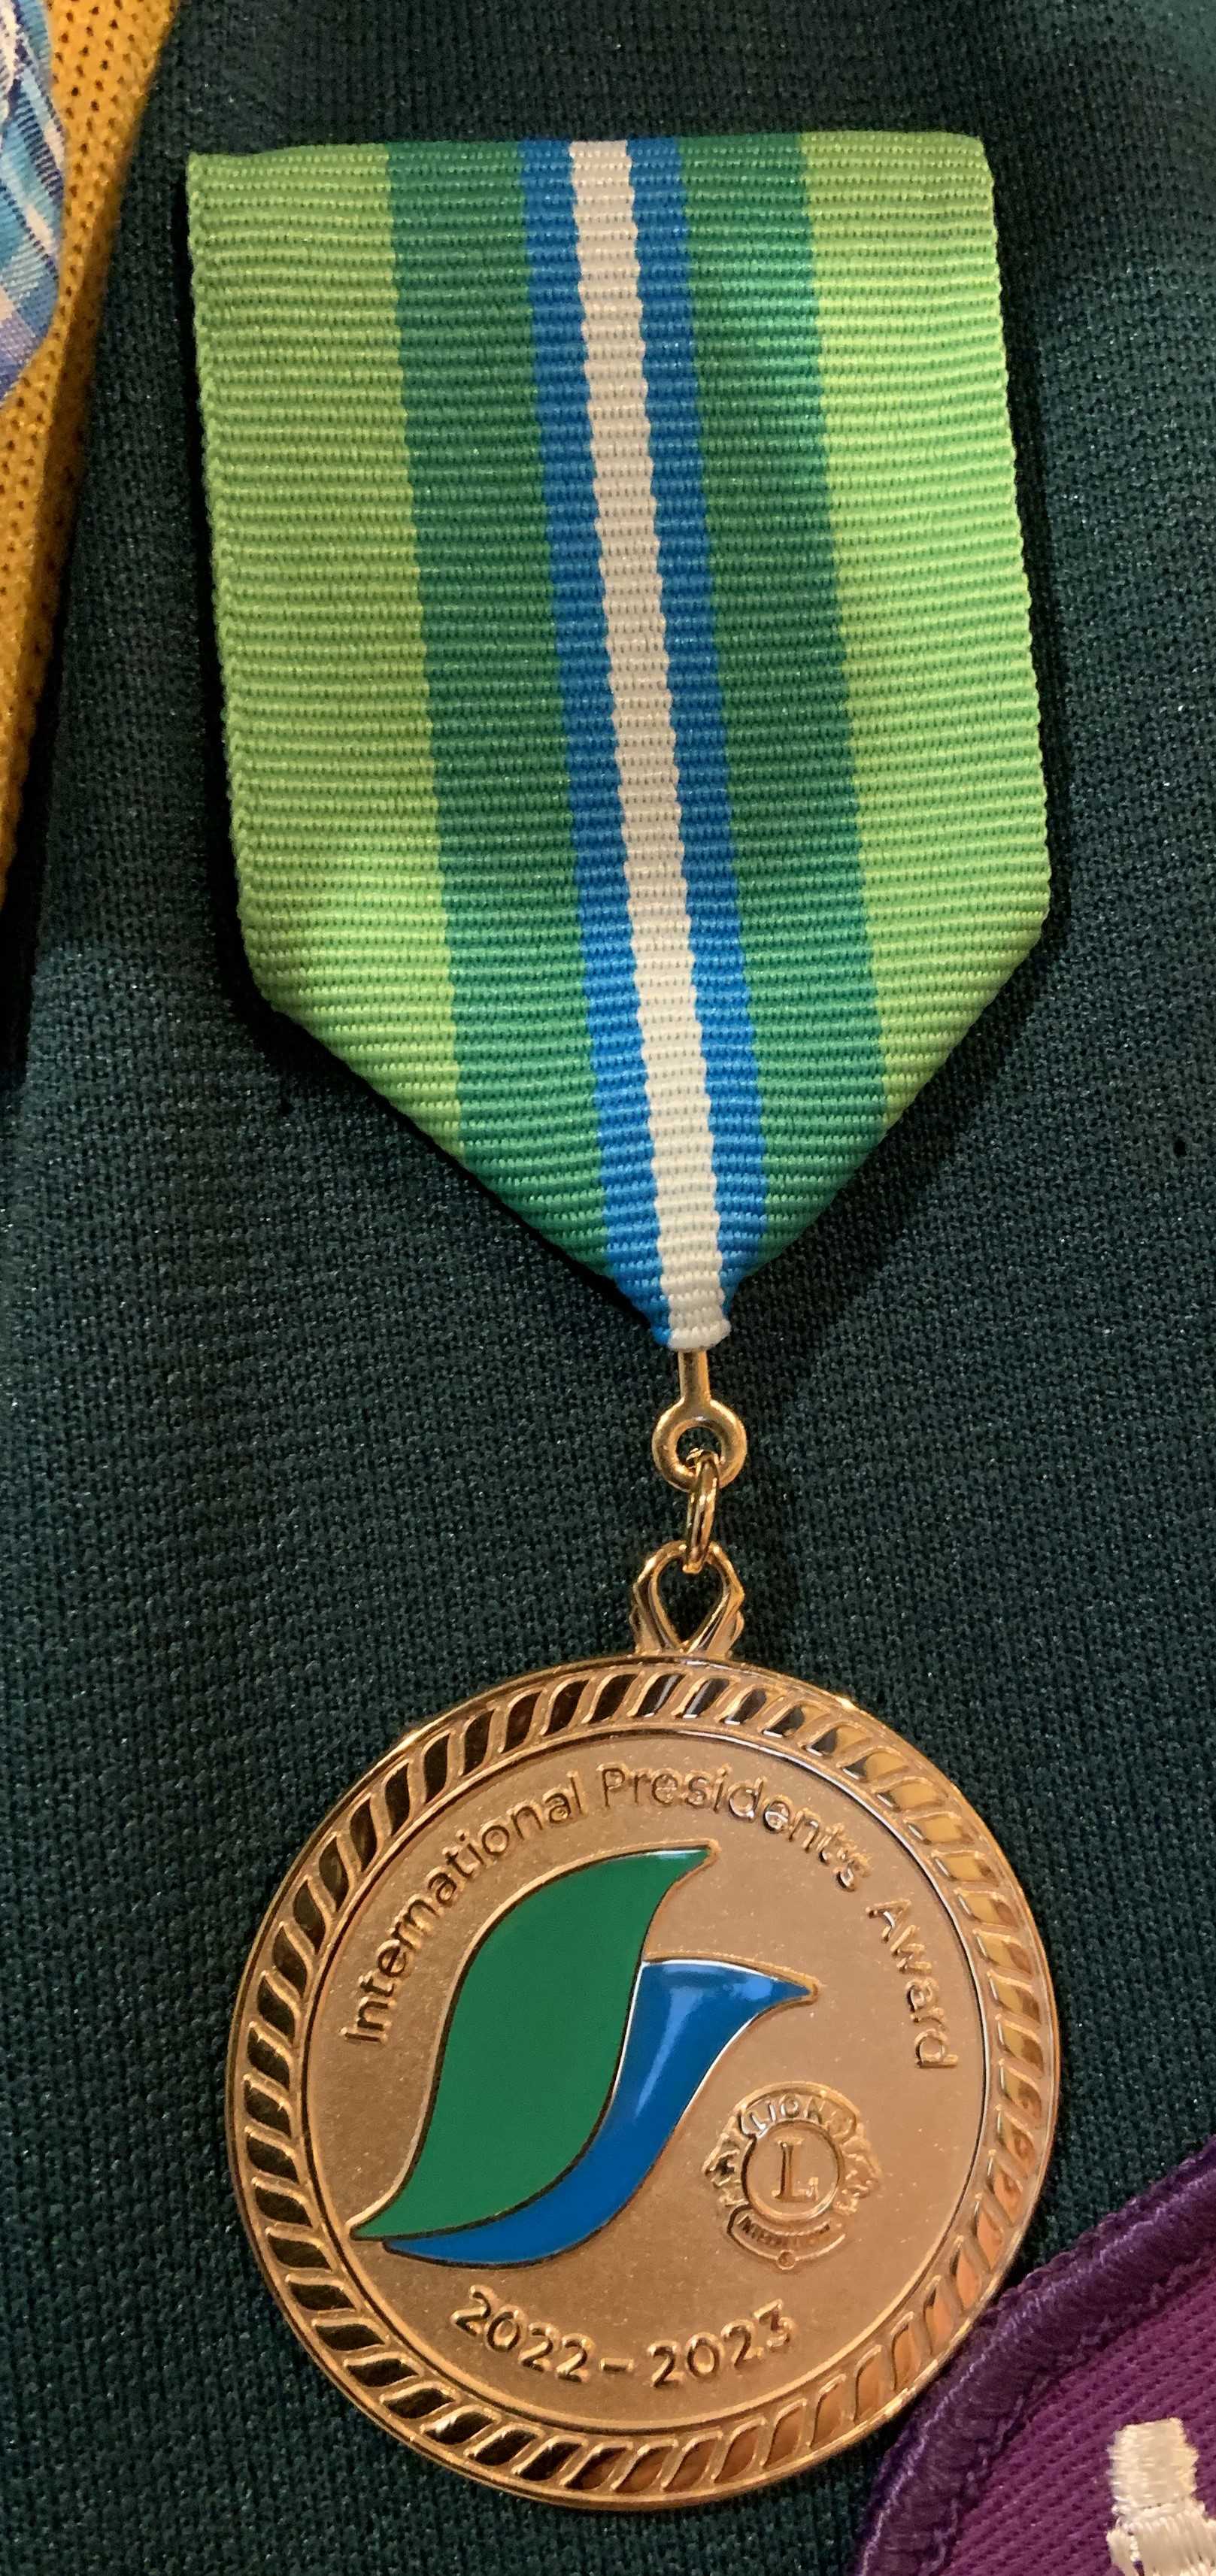 652025b233496 medal resized